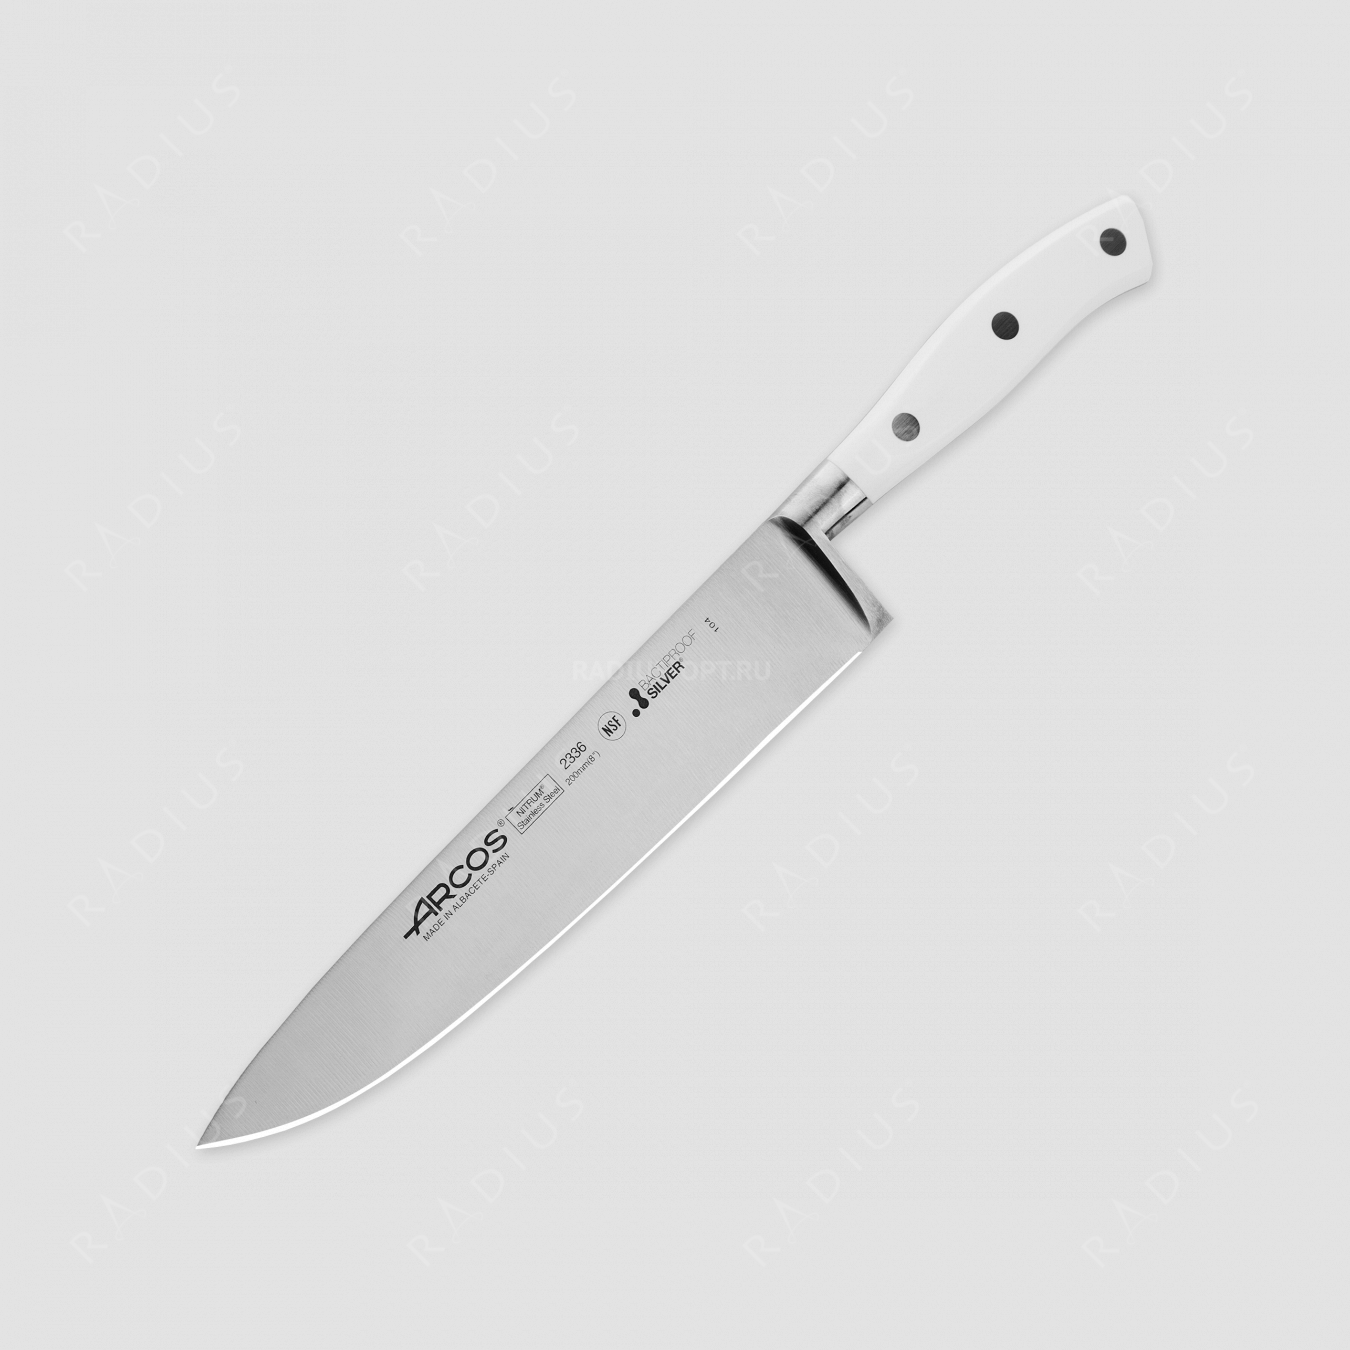 Профессиональный поварской кухонный нож 20 см, серия Riviera Blanca, ARCOS, Испания